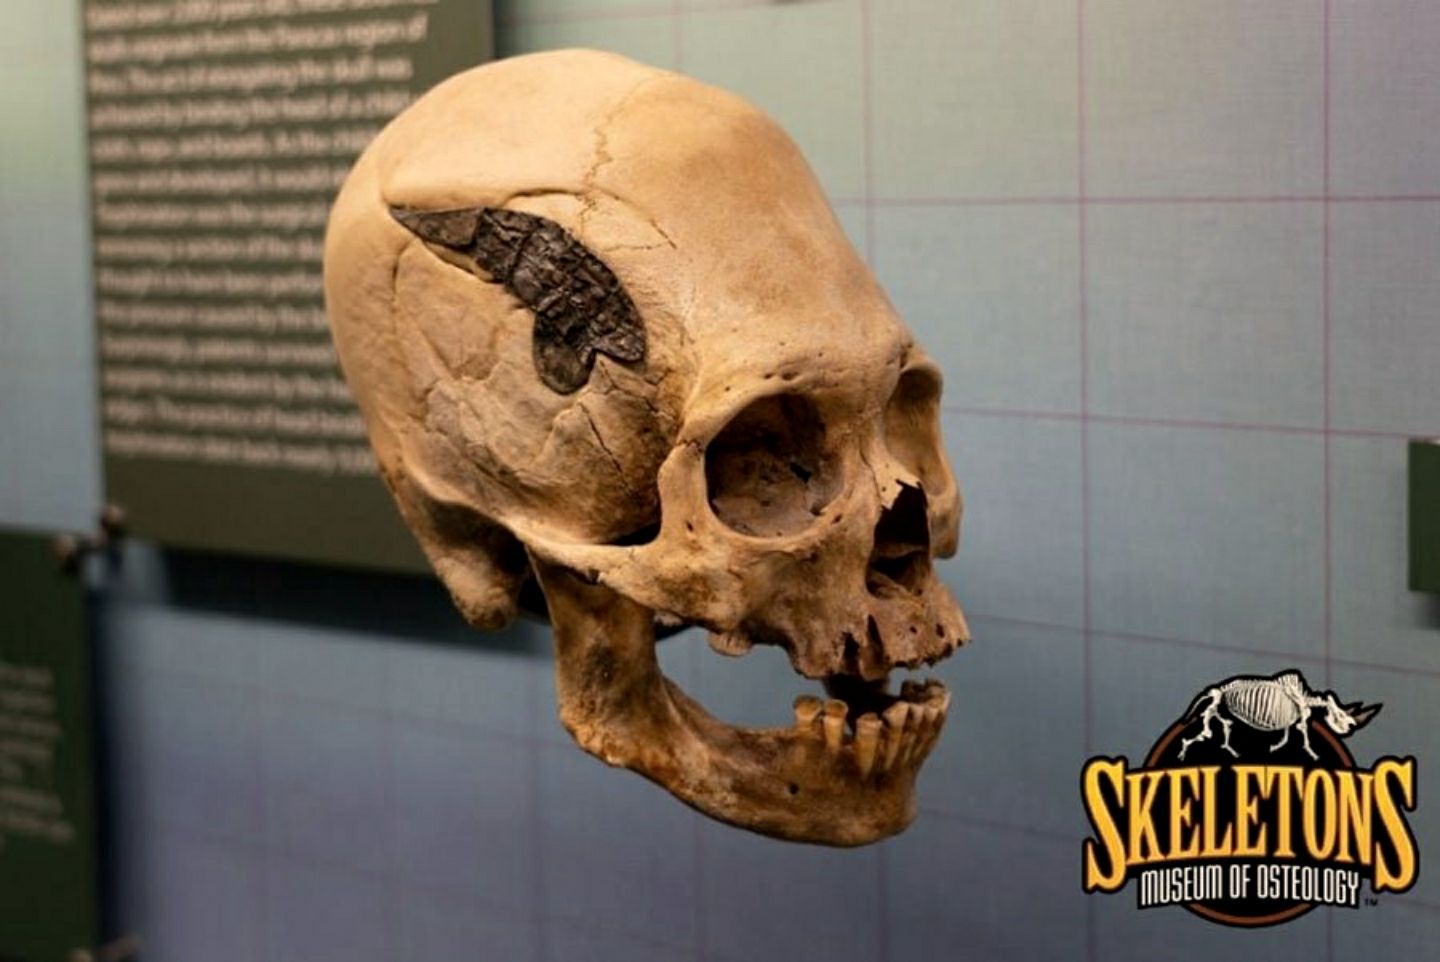 Deze schedel uit Peru heeft een metalen implantaat. Als het authentiek is, zou het een potentieel unieke vondst uit de oude Andes zijn.